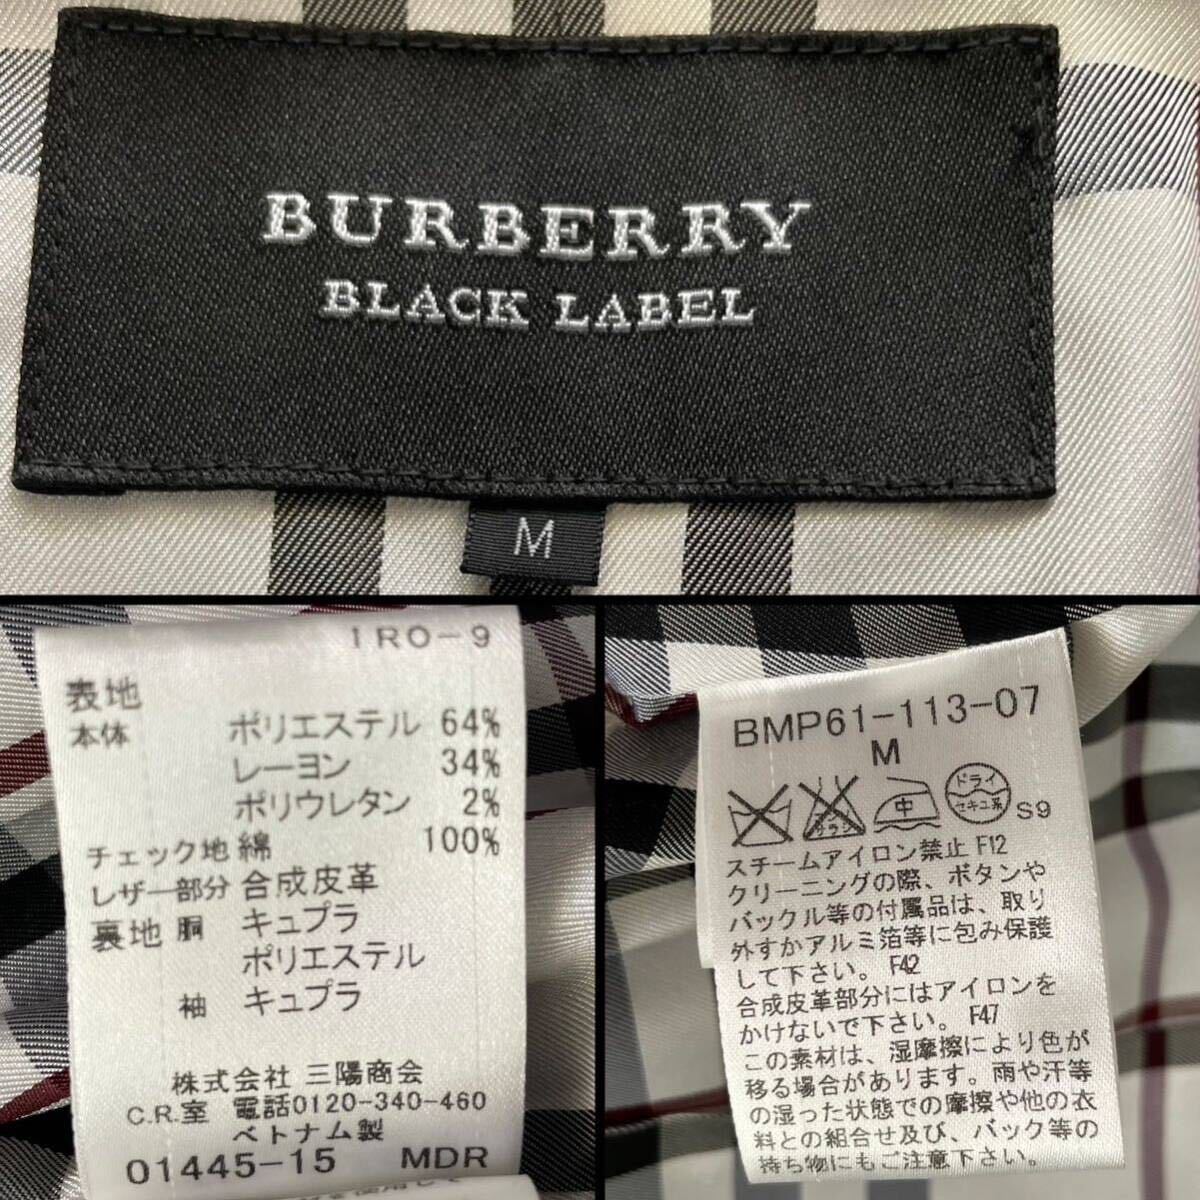  прекрасный товар BURBERRY BLACKLABEL Napoleon пальто жакет шланг вышивка noba проверка серебряный кнопка Burberry Black Label M размер внешний 